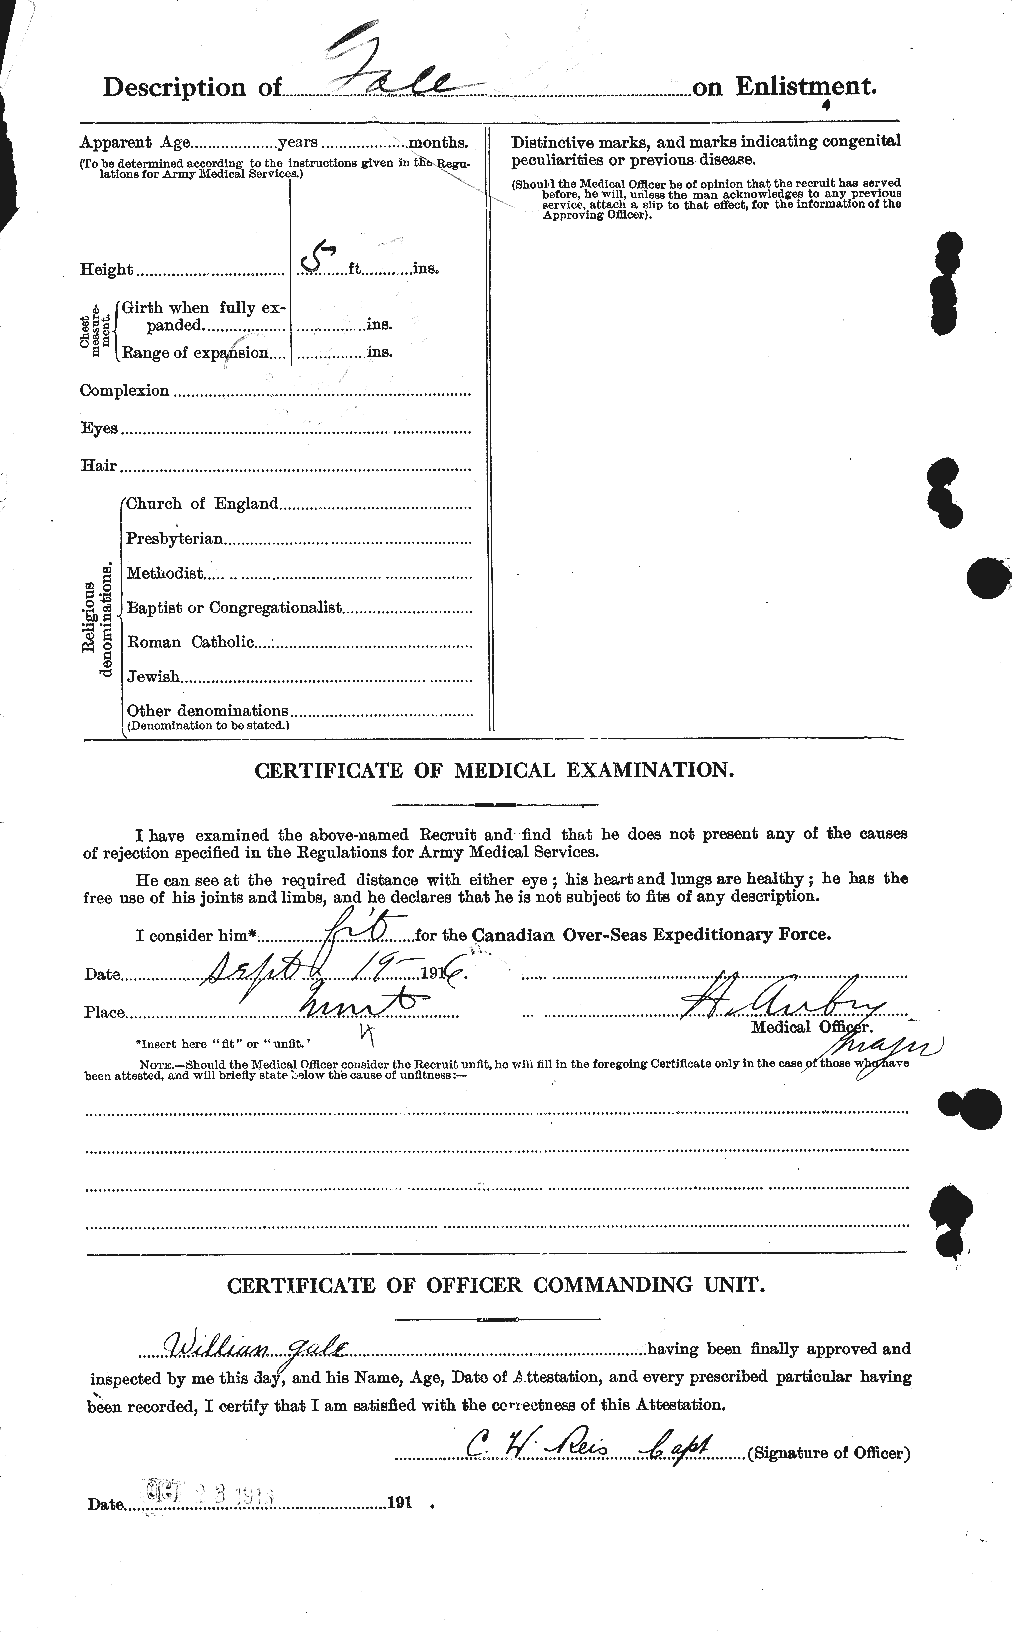 Dossiers du Personnel de la Première Guerre mondiale - CEC 345431b